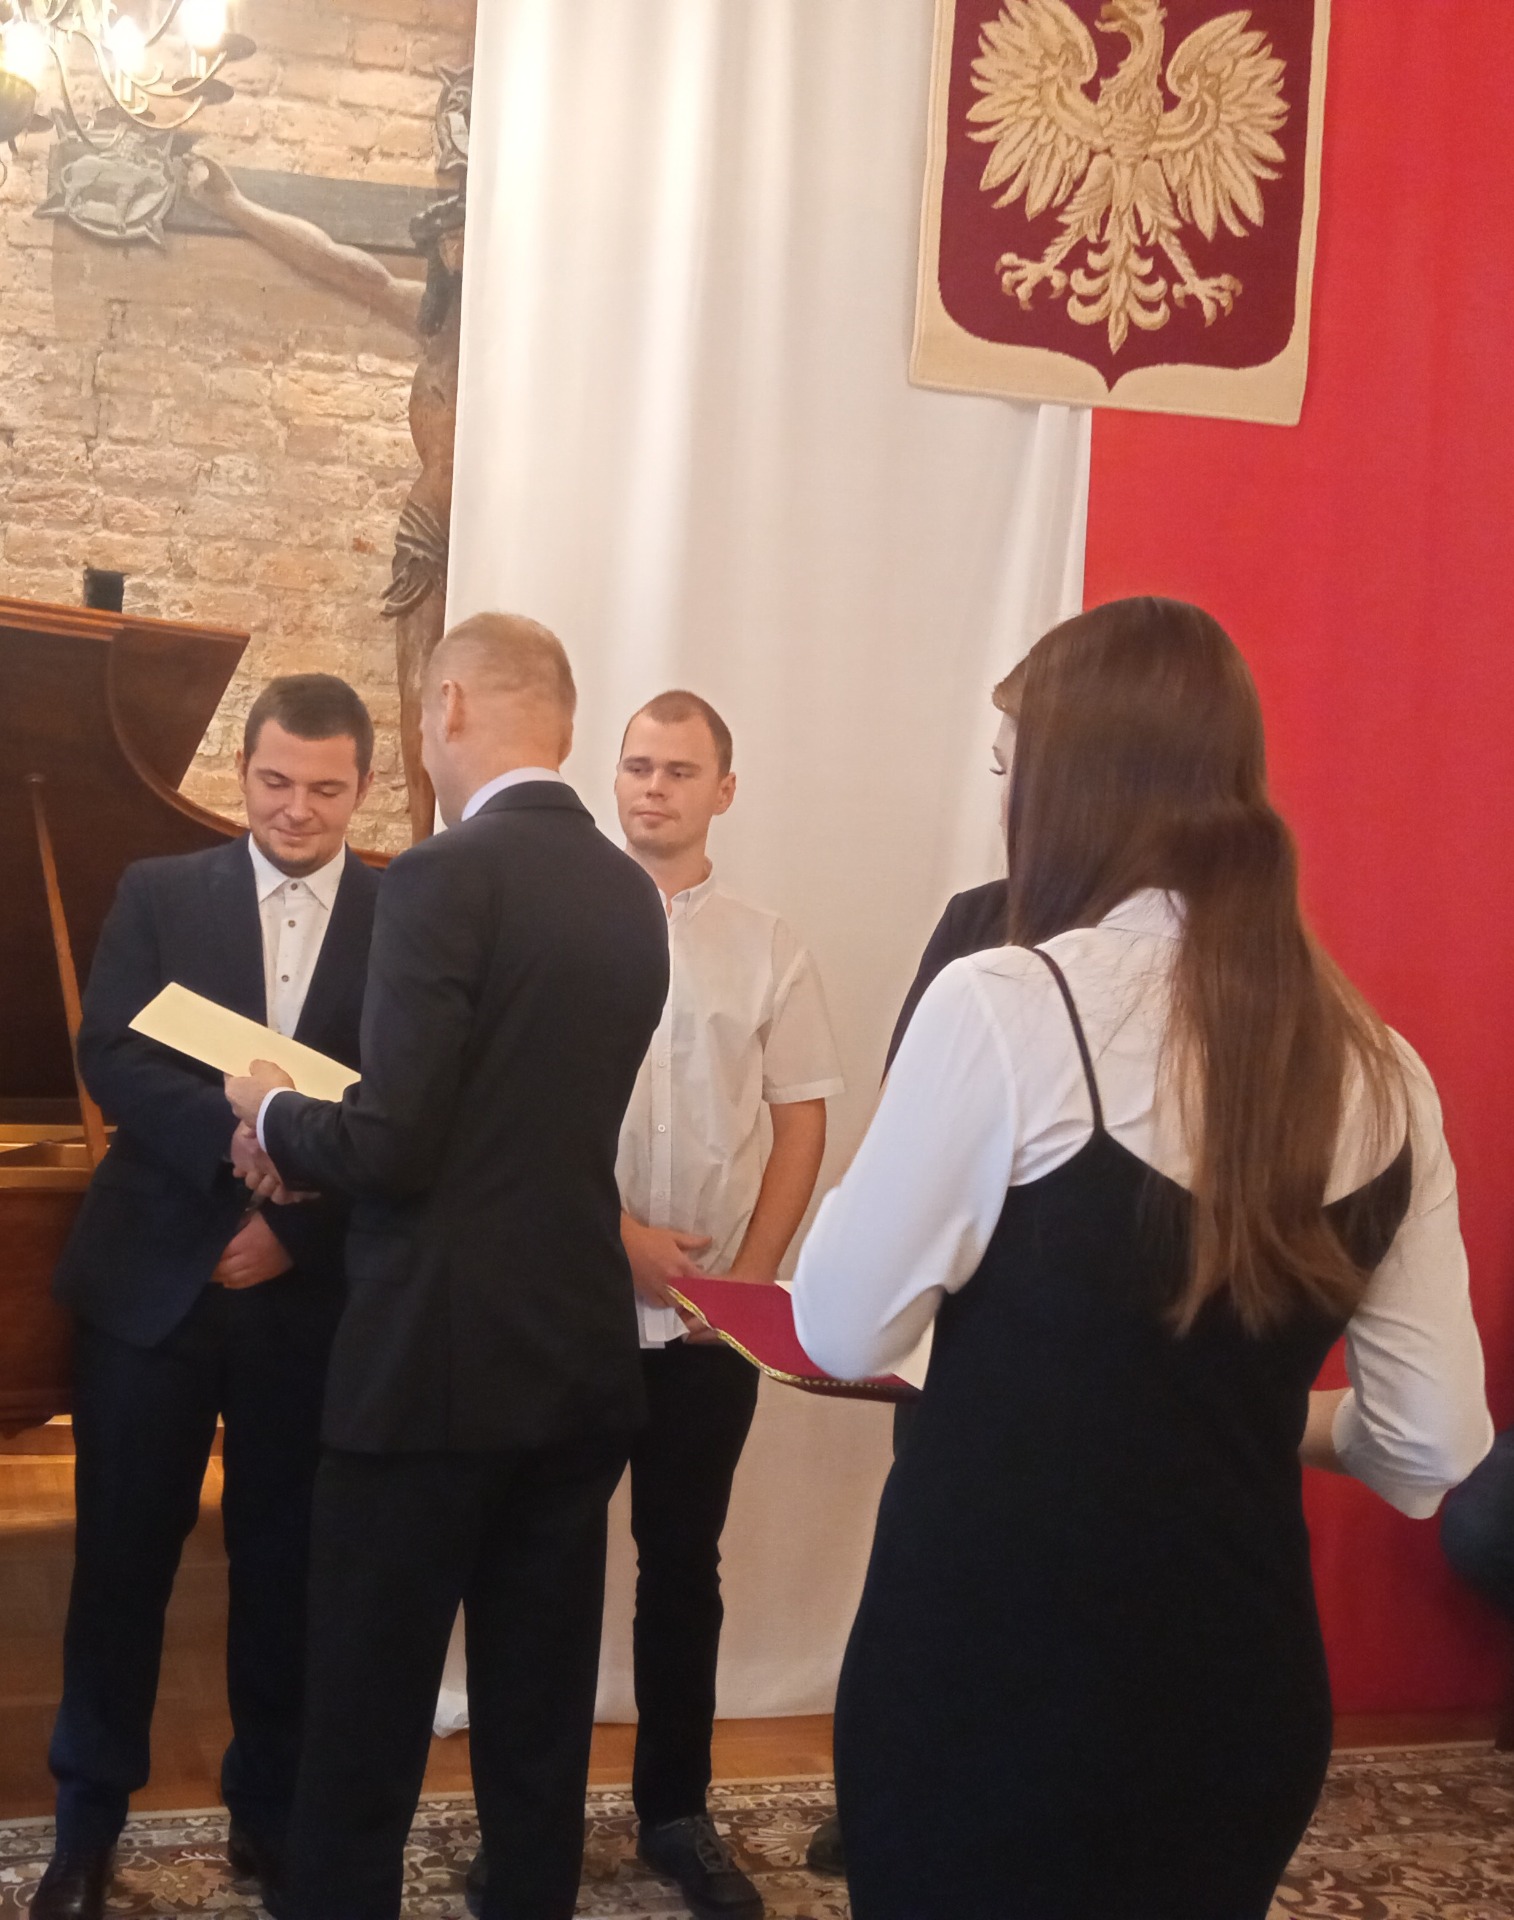 Uczniowie Piotr Jaworski z klasy IV TBFG i Konrad Zatorski z klasy III TD odbierają stypendia ufundowane przez Prezesa Rady Ministrów